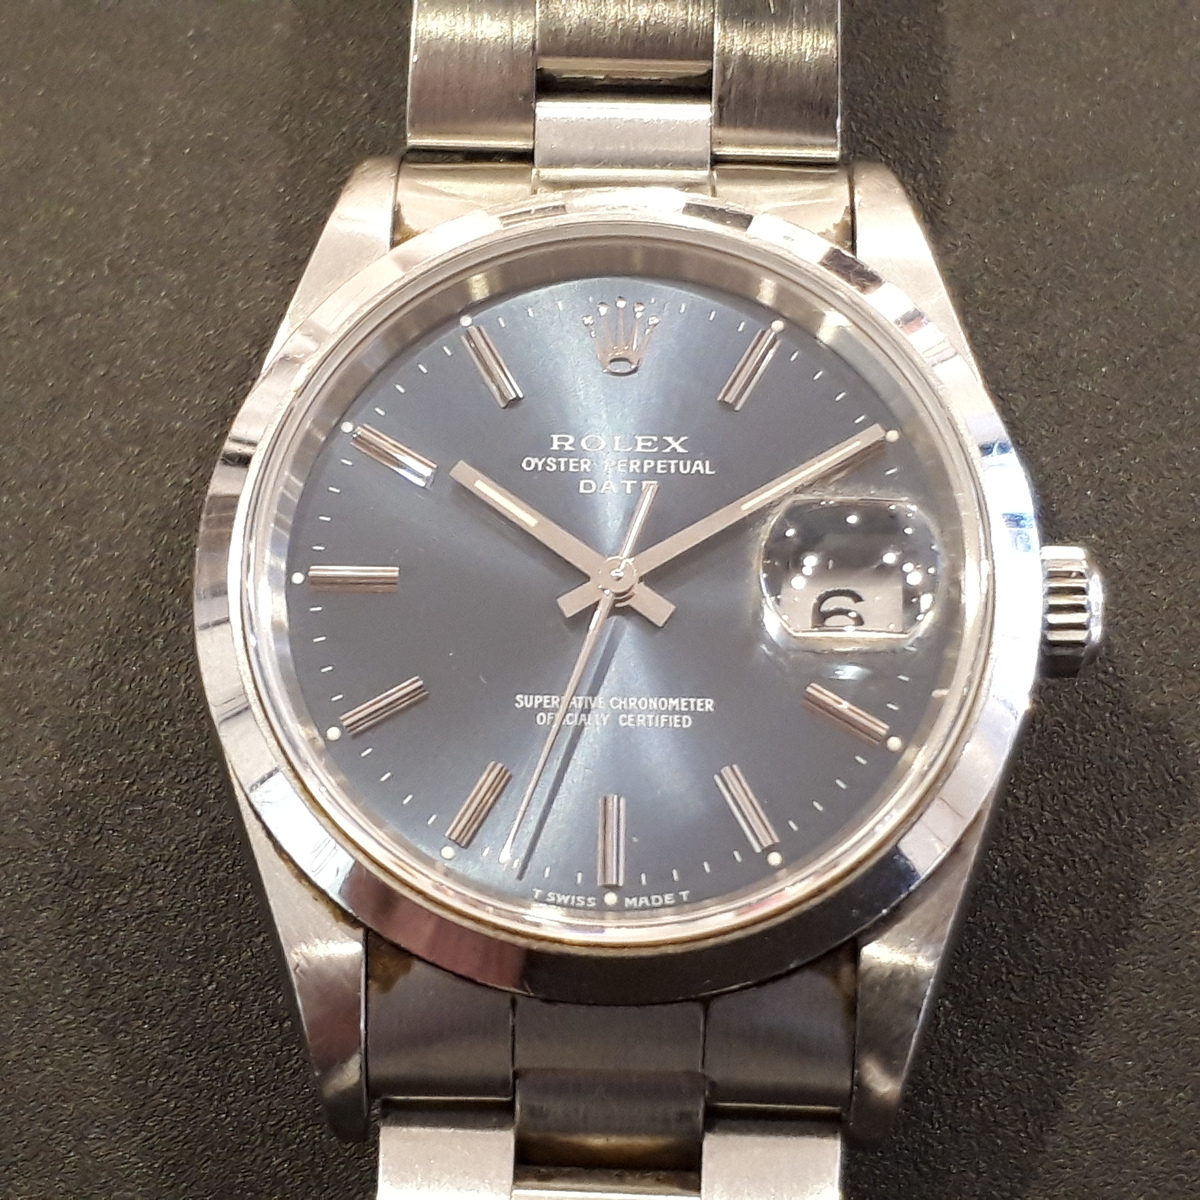 ロレックスのオイスターパーペチュアルデイト Ref.15200 SS  自動巻き時計の買取実績です。